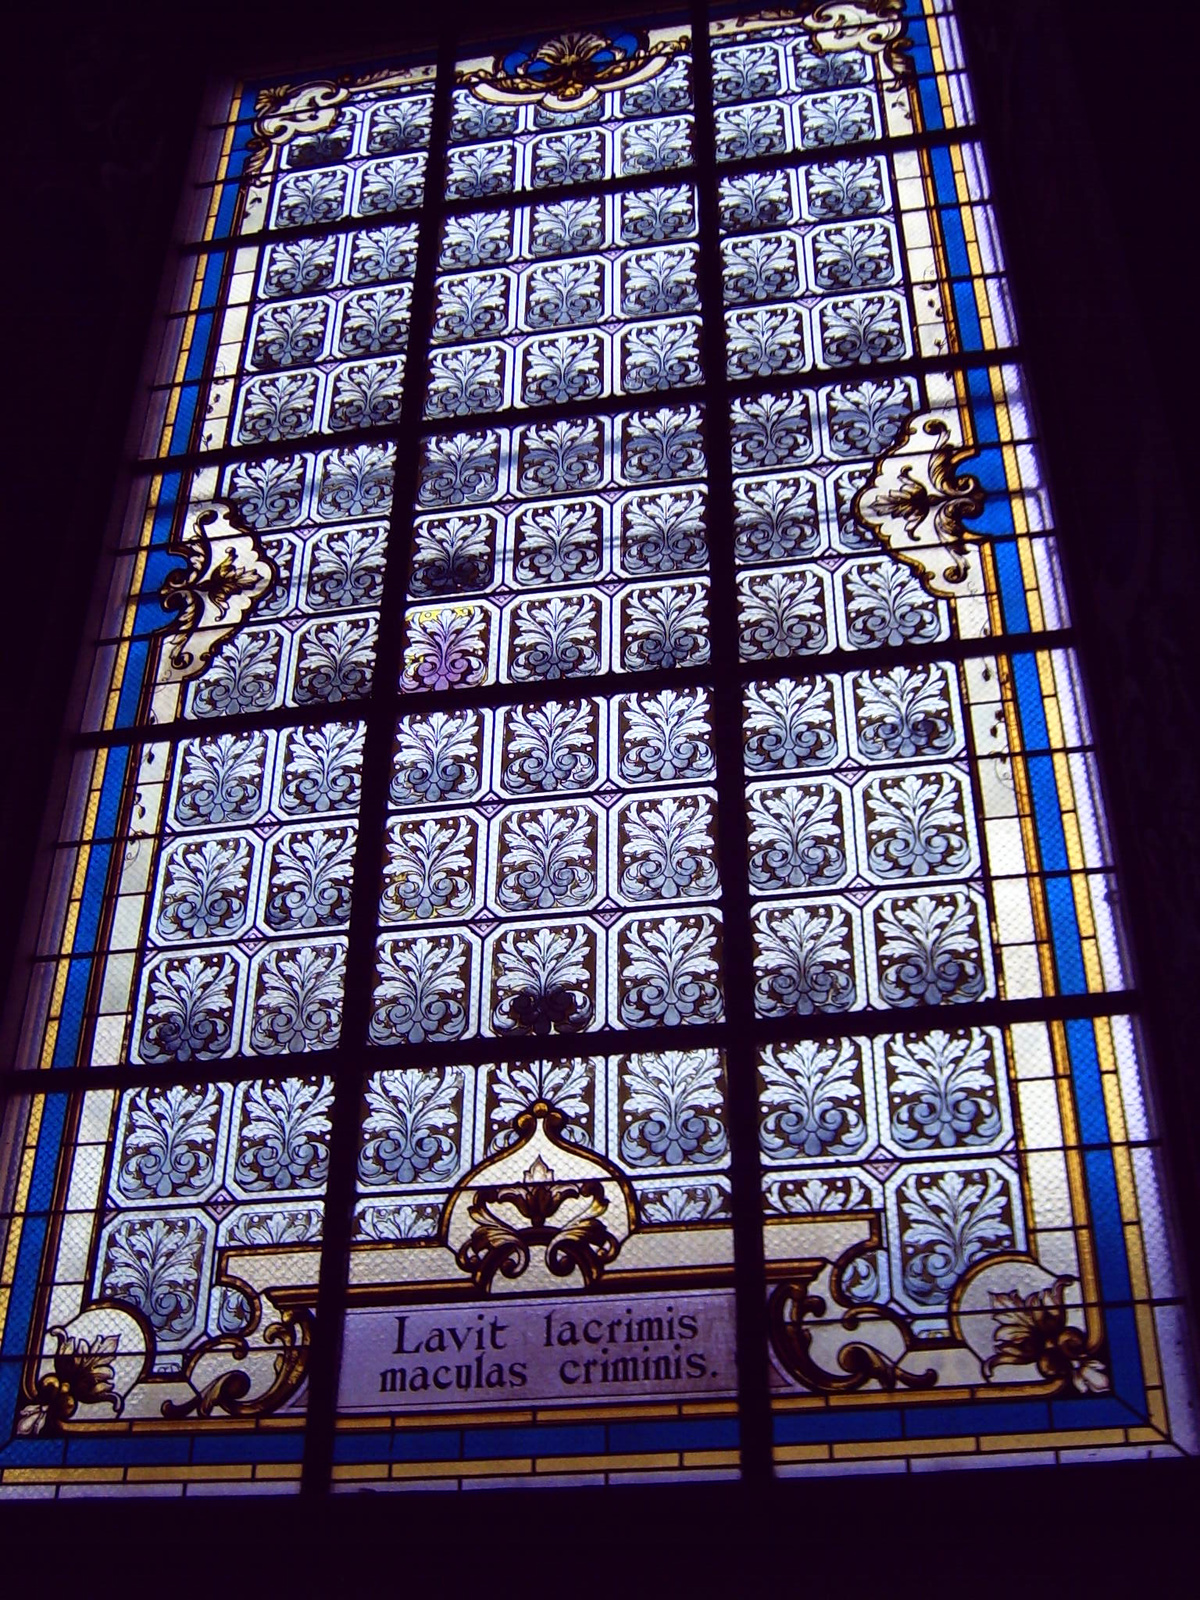 Göttweig, a templom egyik ablaka